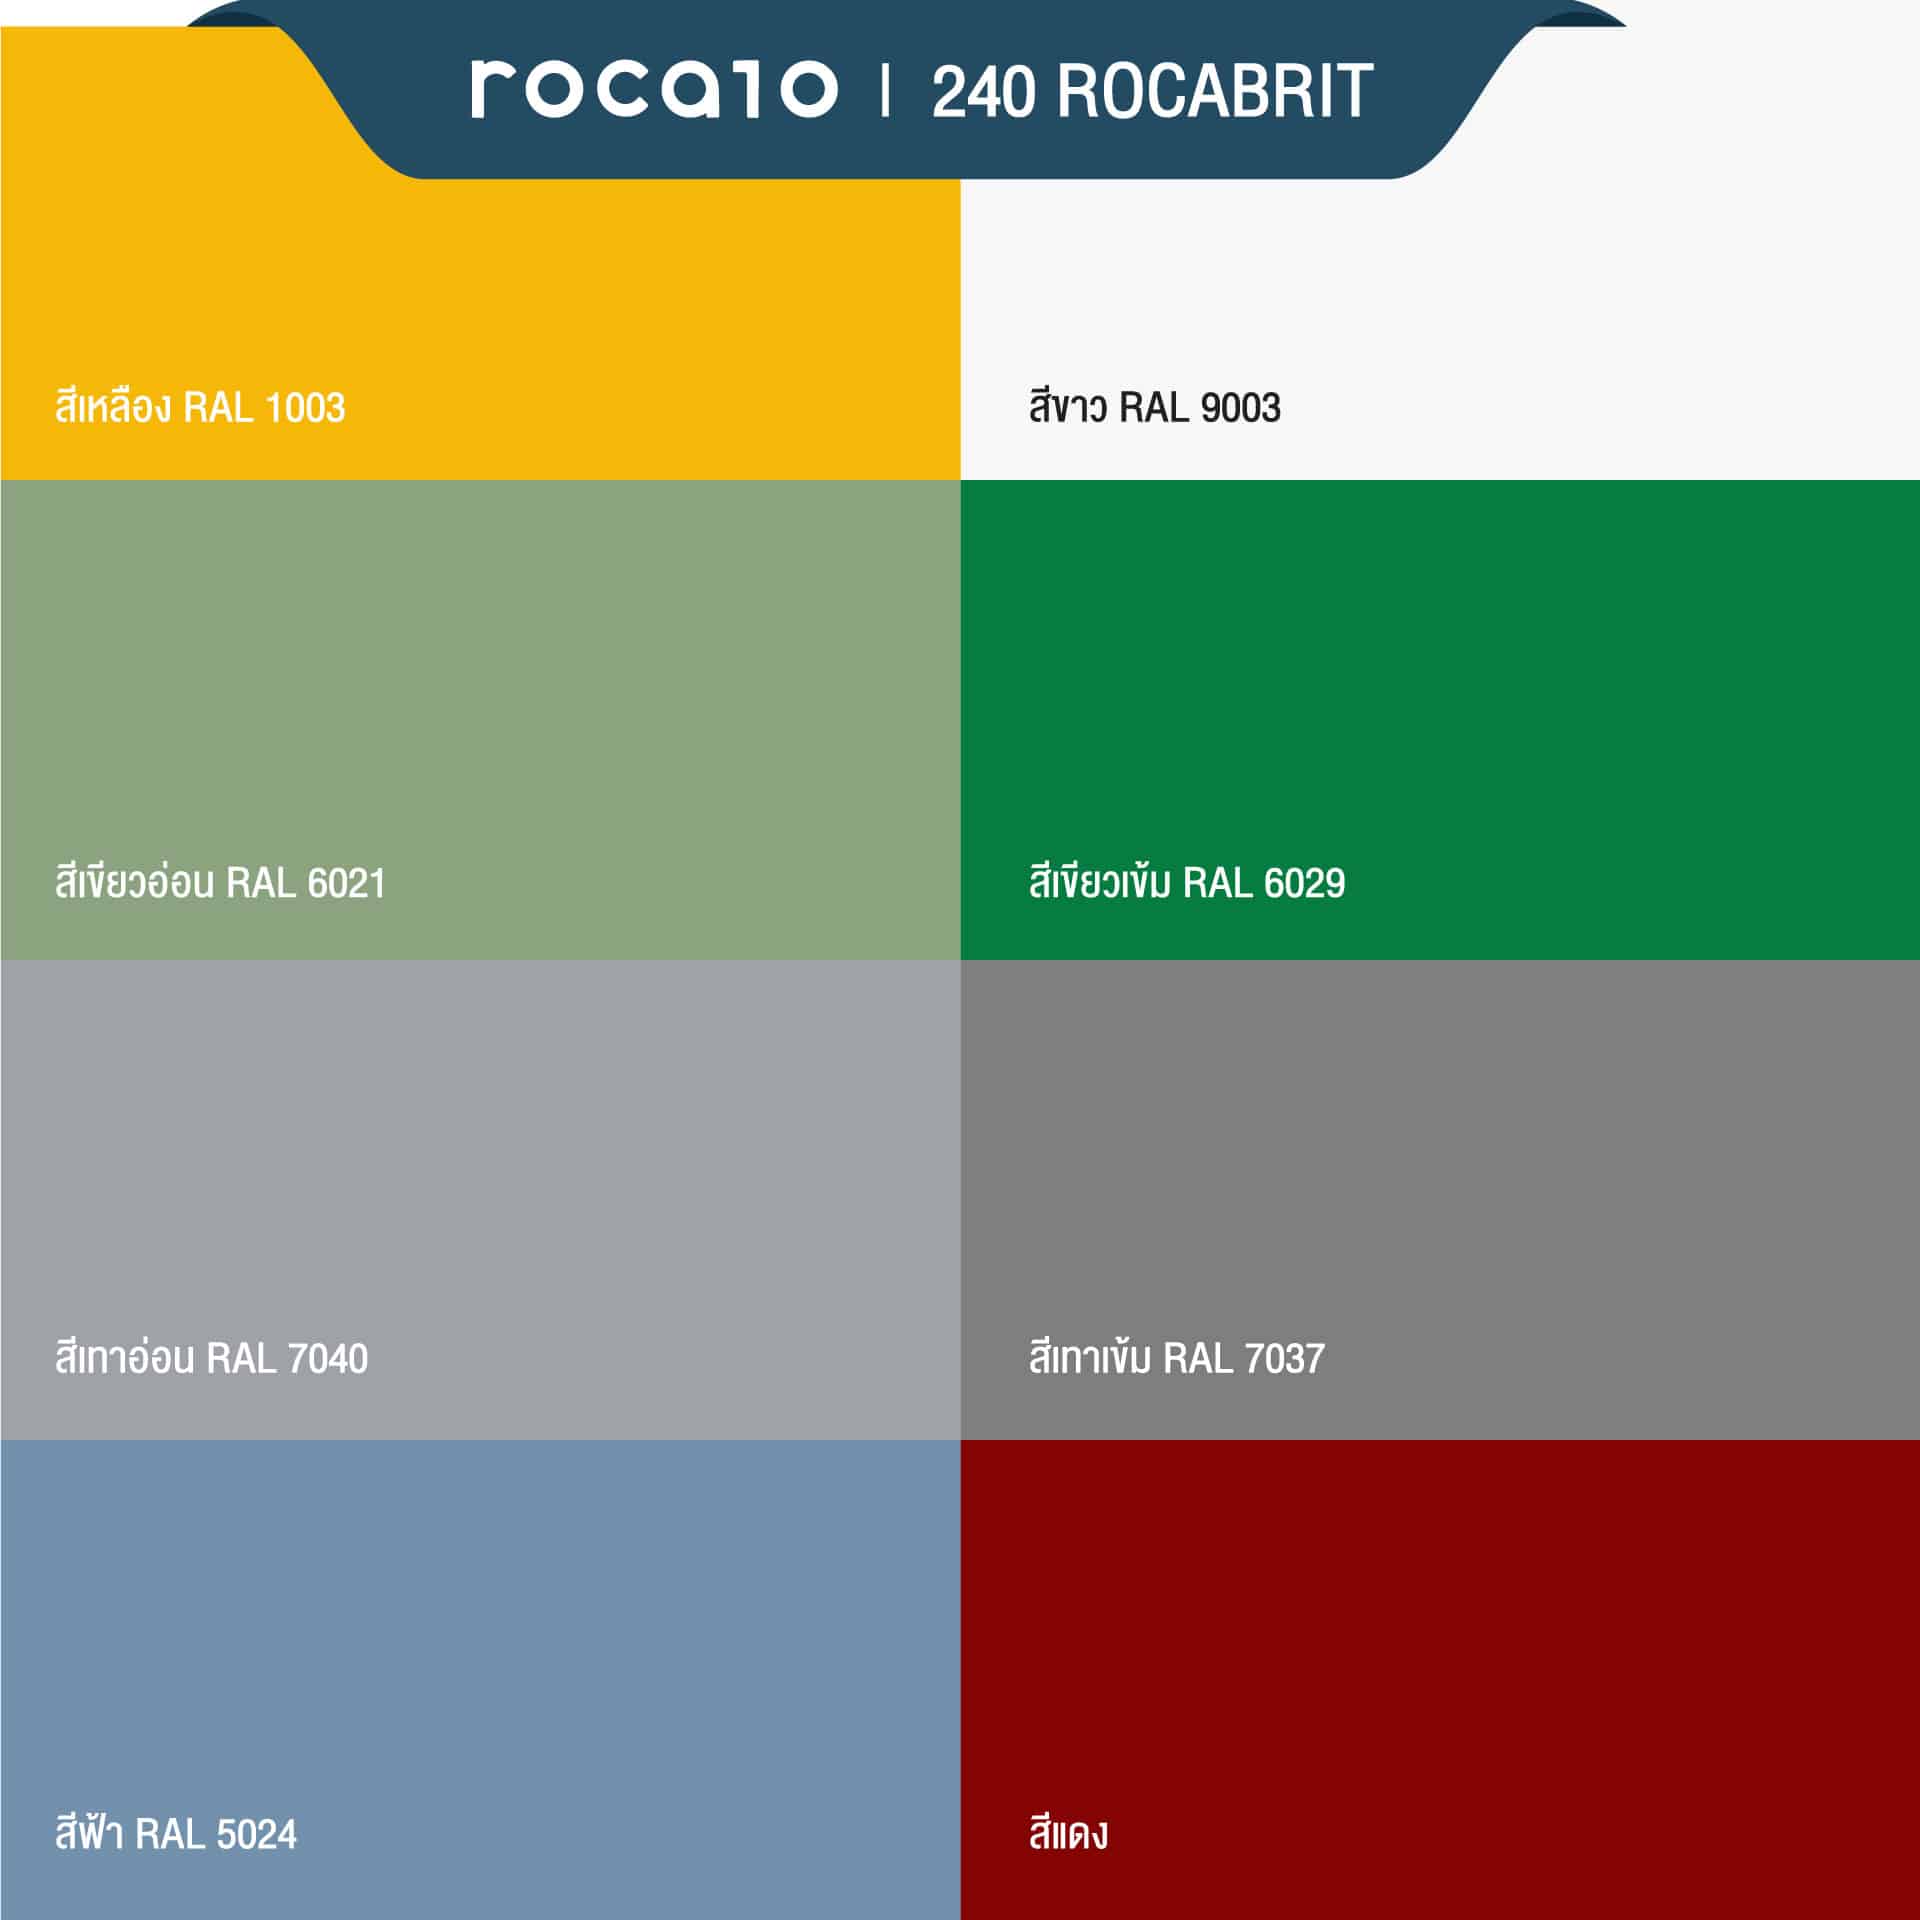 Rocabrit 240